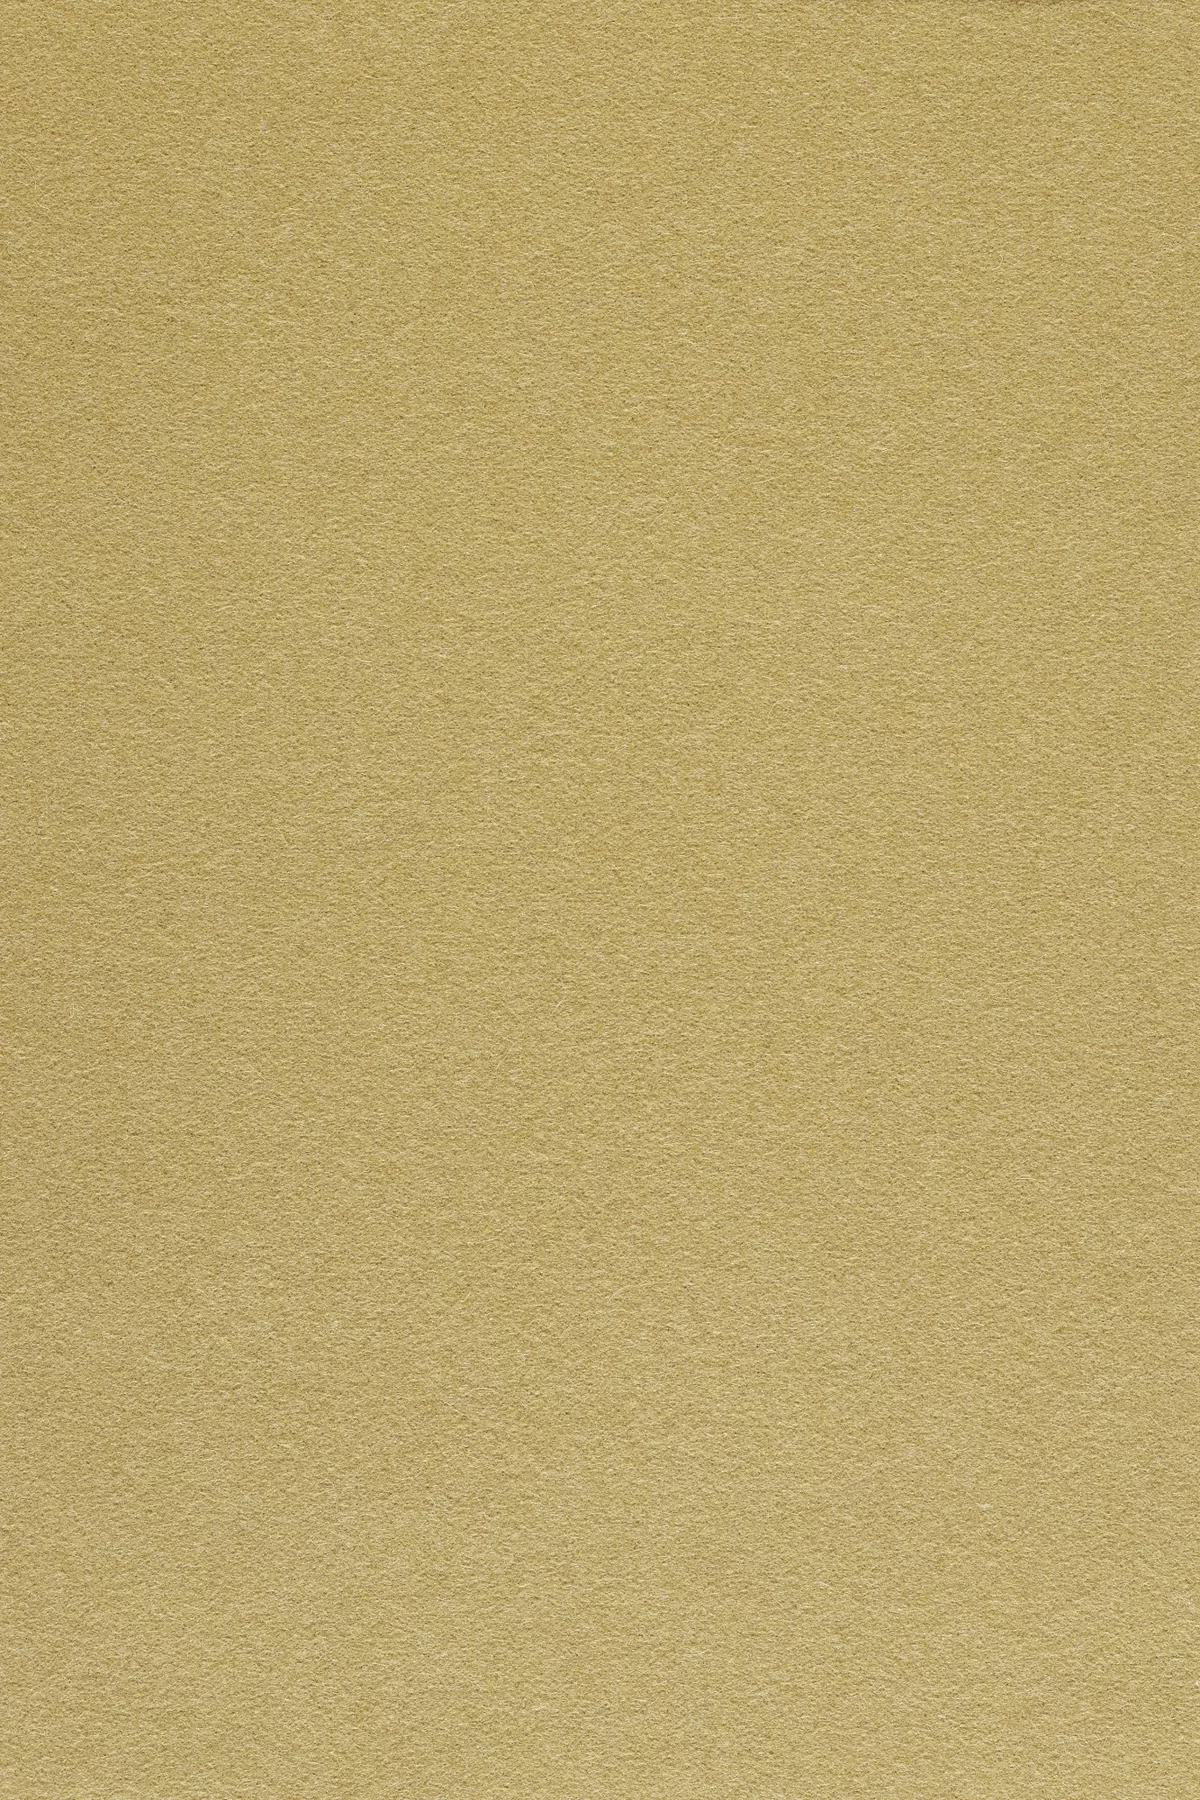 Fabric sample Divina 3 236 brown